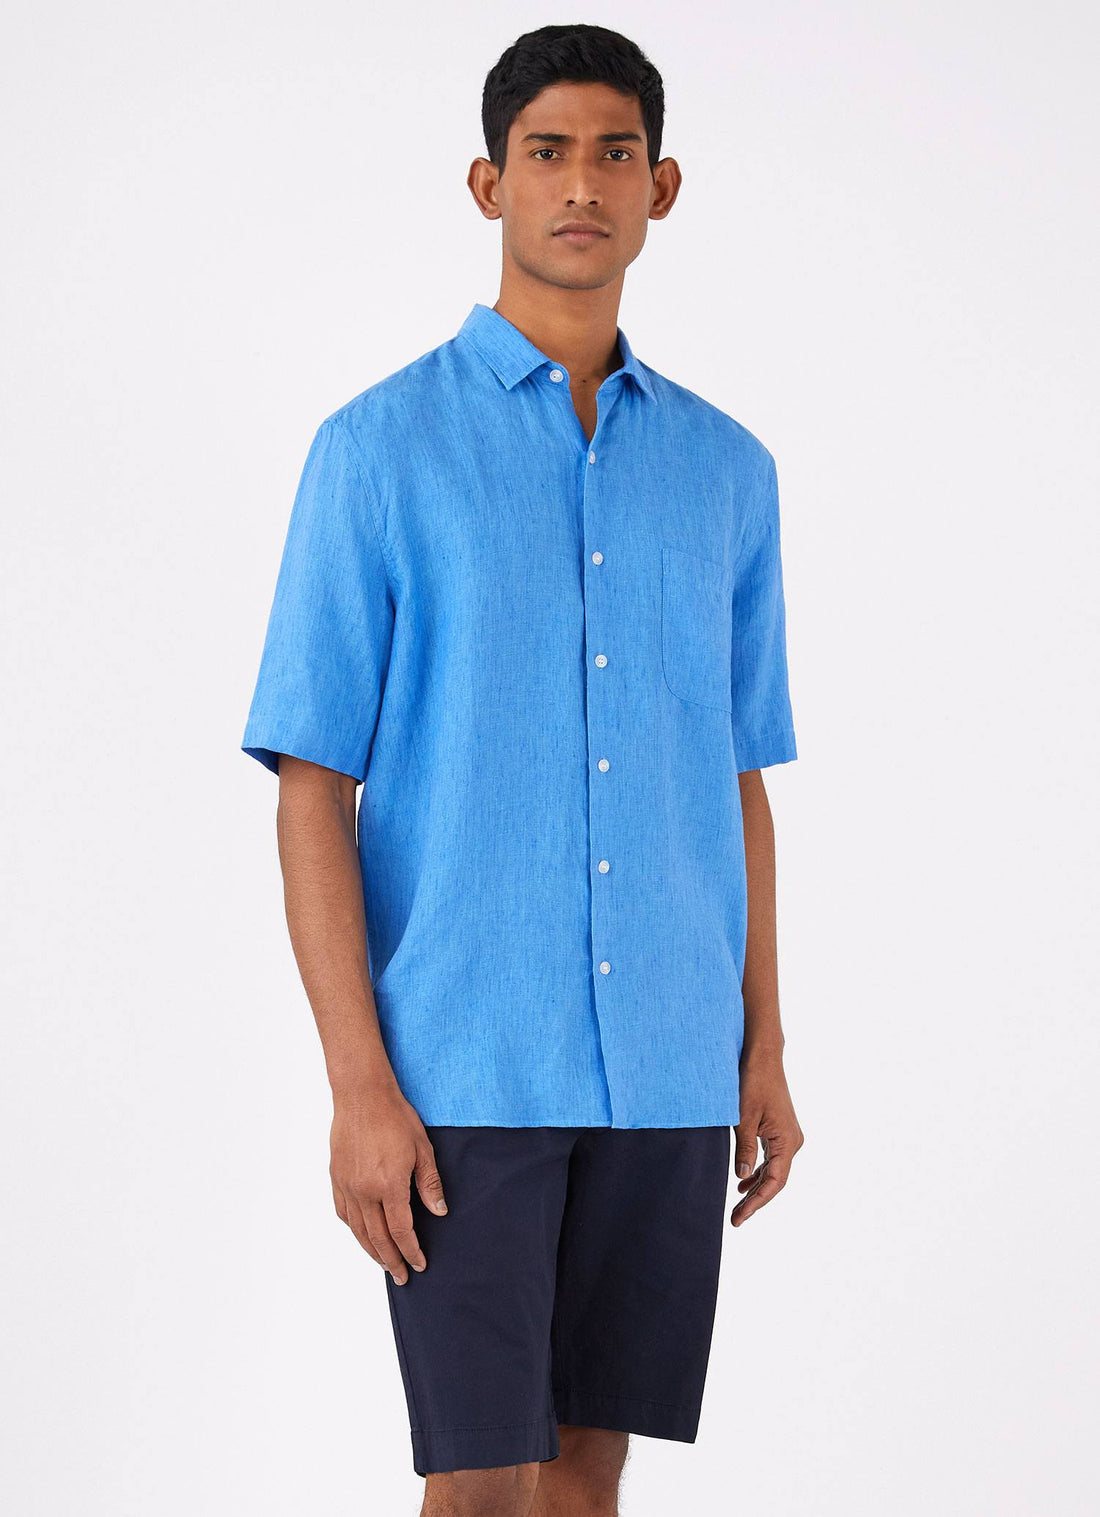 Men's Short Sleeve Linen Shirt in Lake Blue